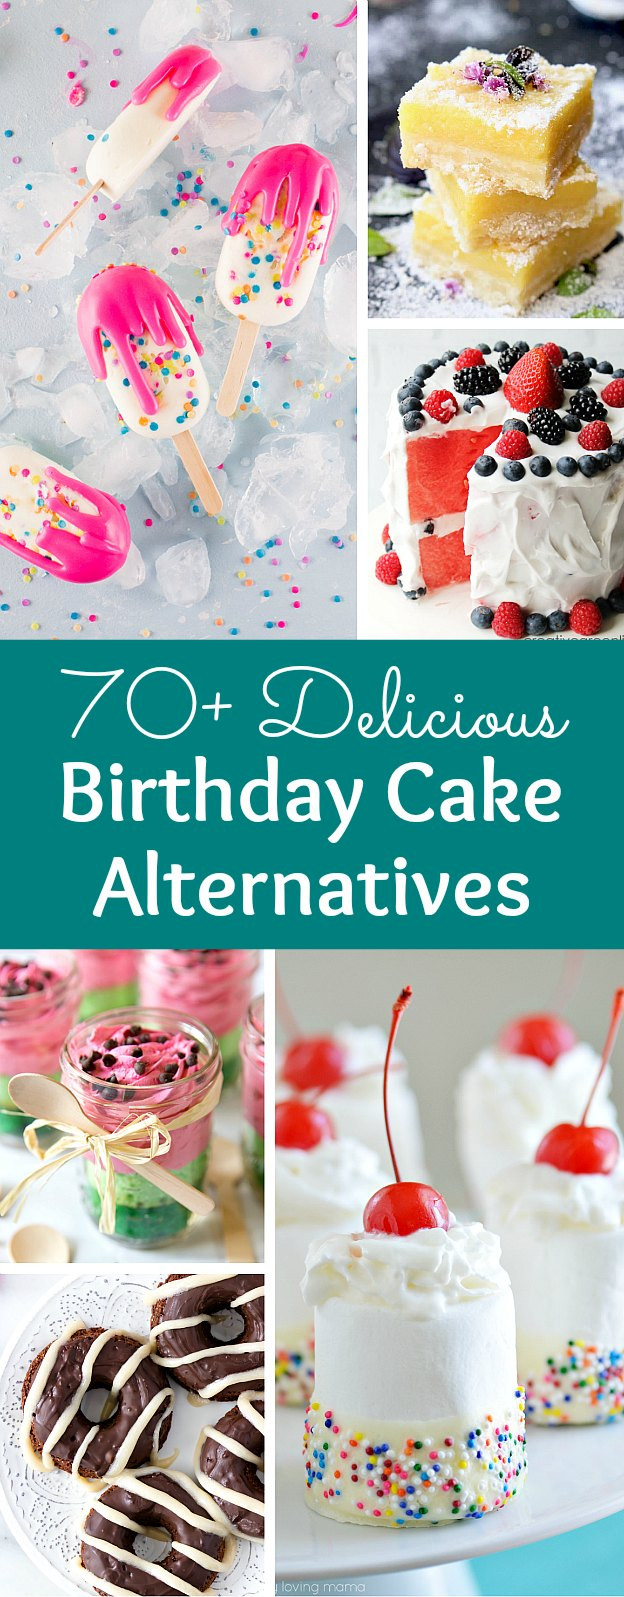 Alternatives To Birthday Cake
 70 Creative Birthday Cake Alternatives